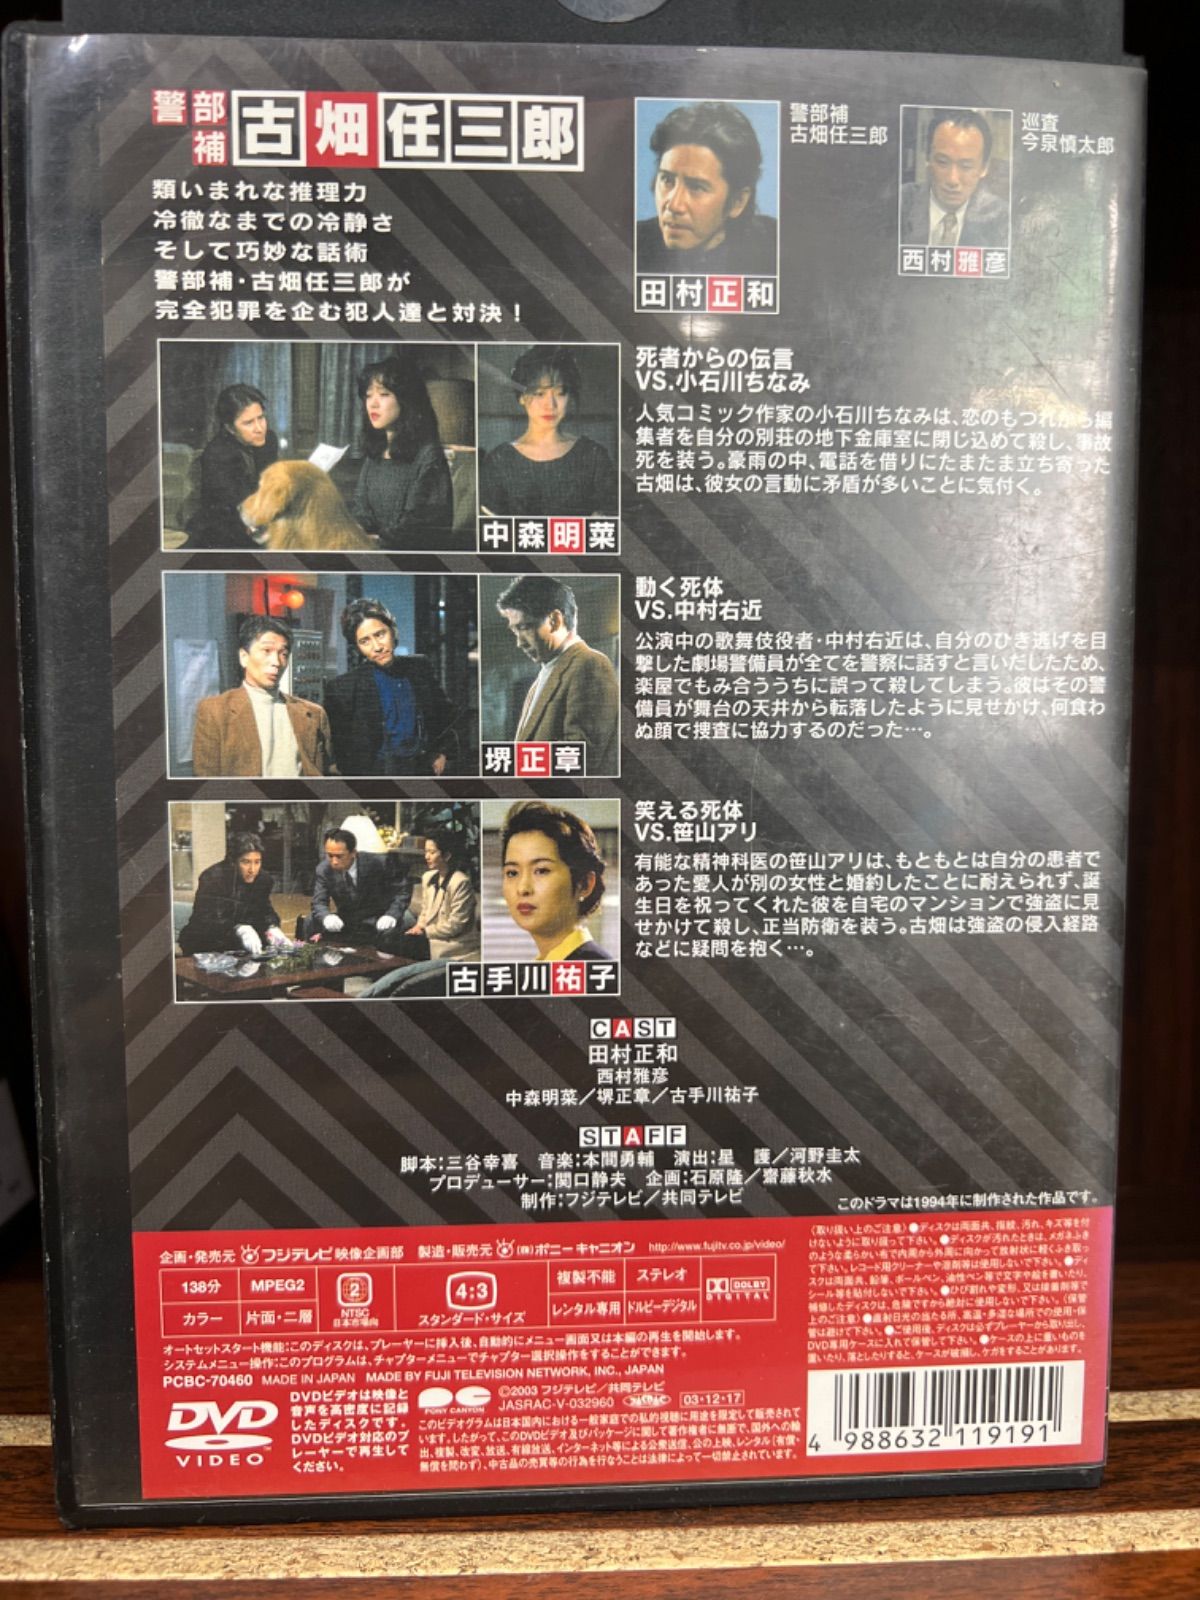 のんさま】古畑任三郎1st 2nd 3rd season DVD-BOX 【直売早割